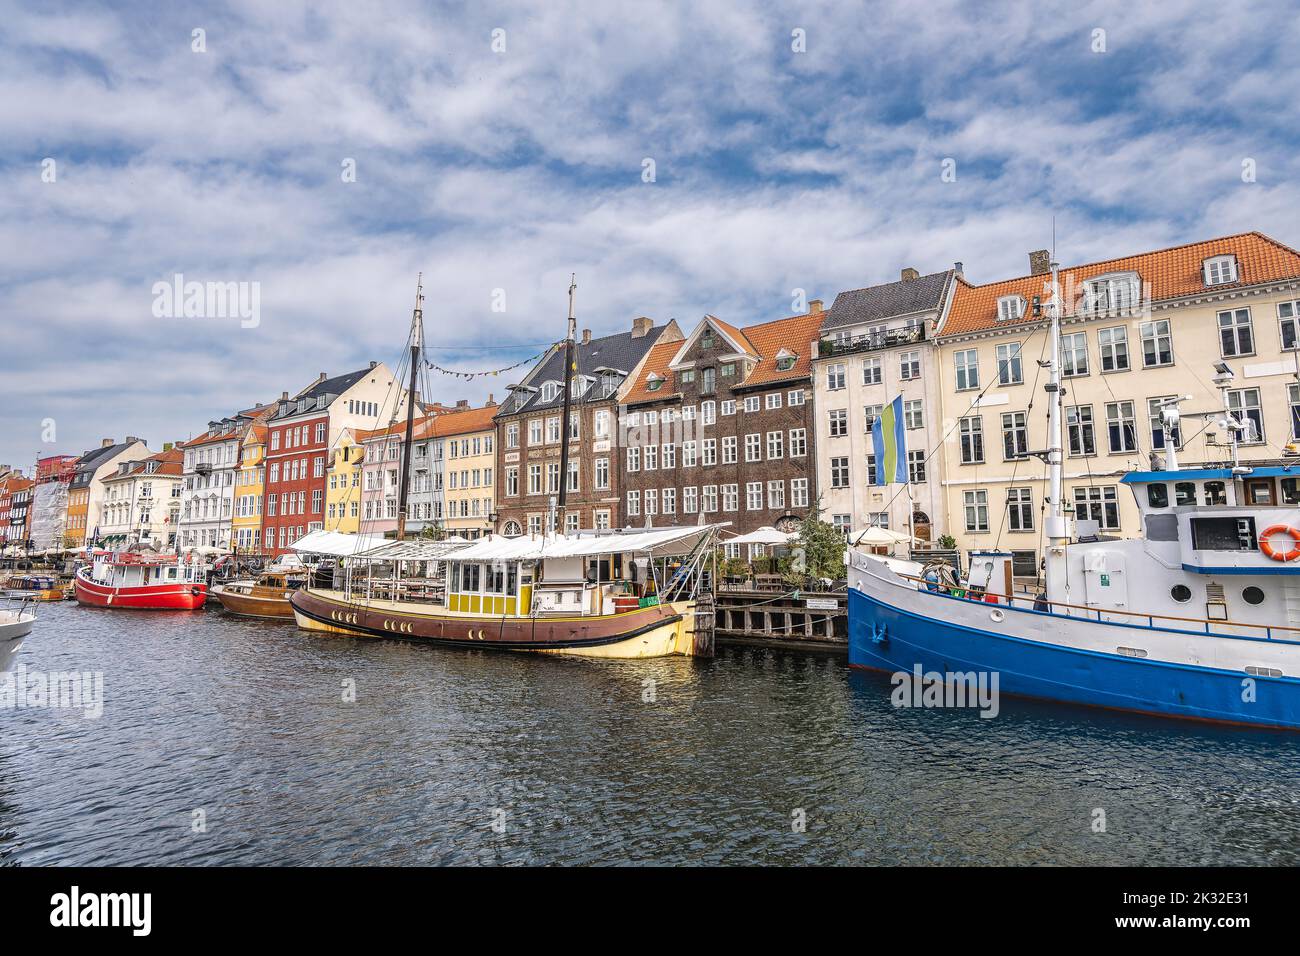 Nyhavn touristic quarter in Copenhagen, Denmark Stock Photo